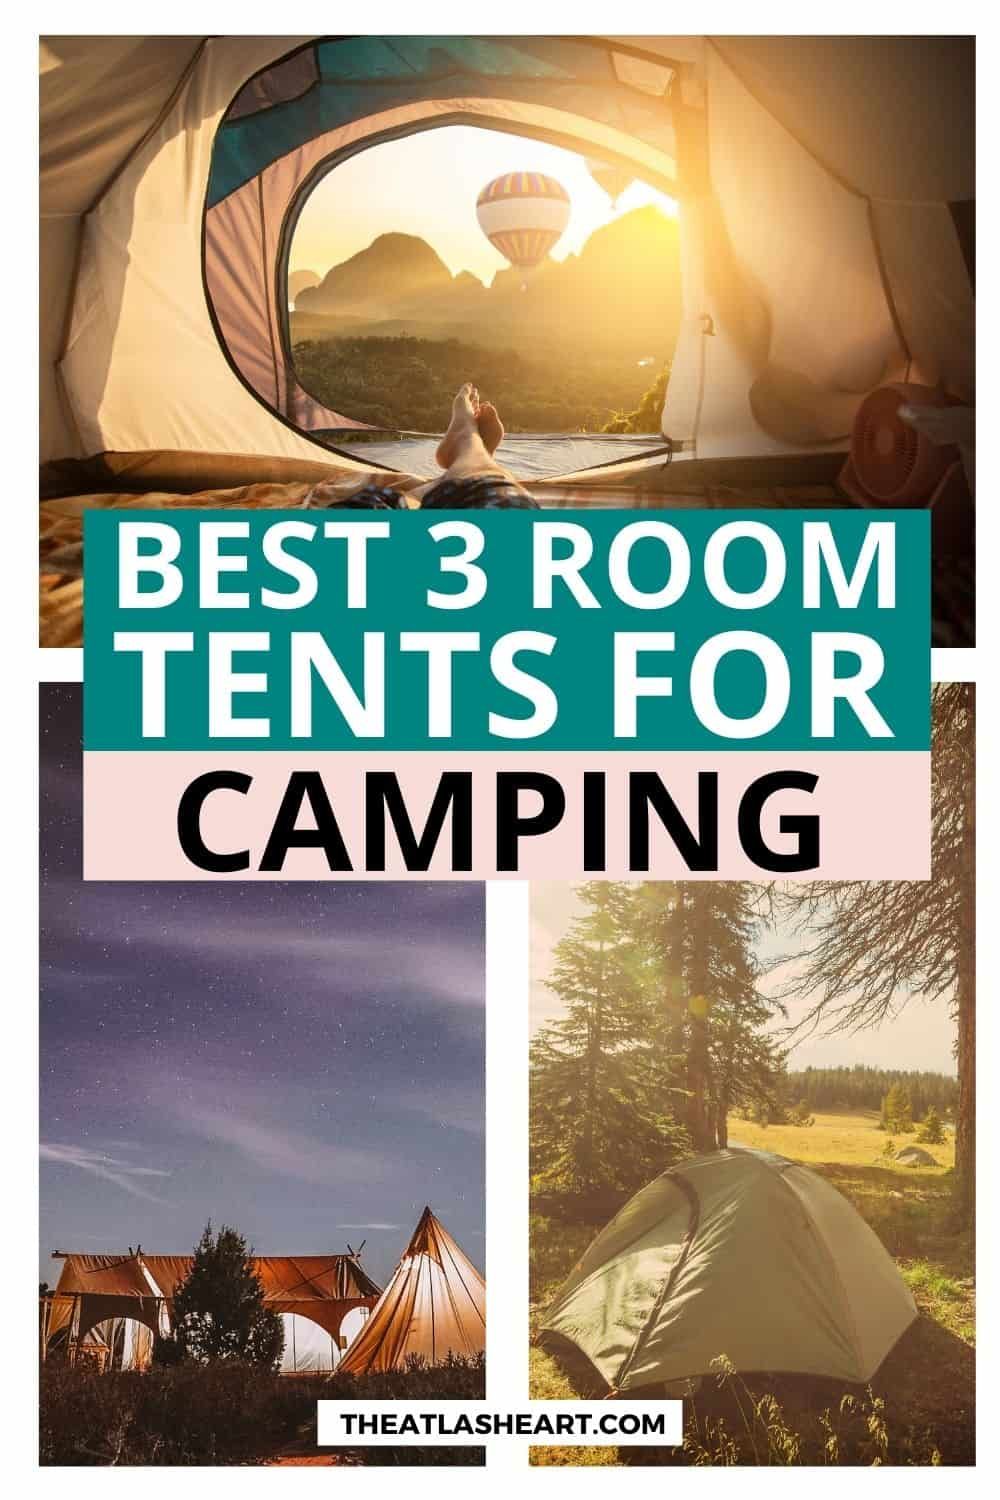 Best 3 Room Tents